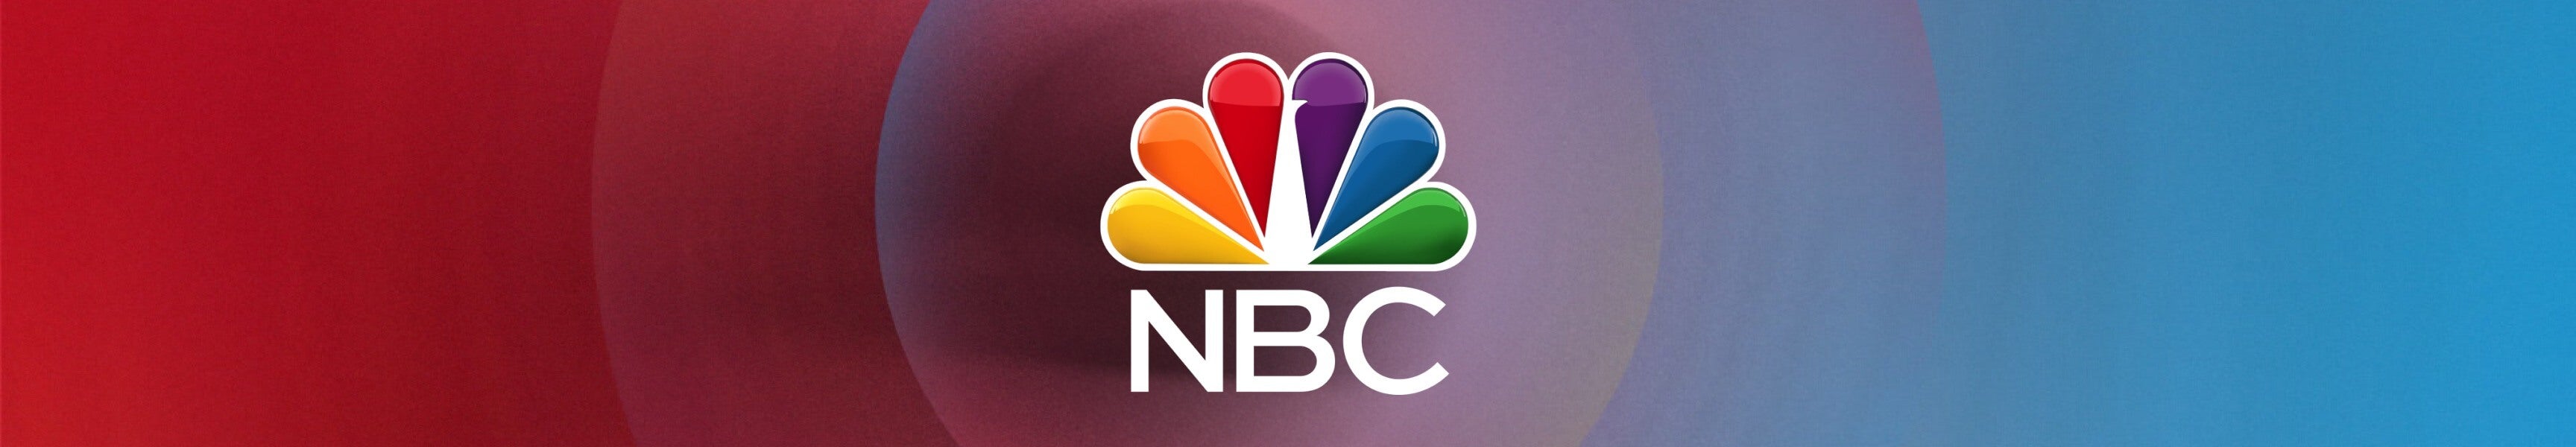 NBC Merchandise